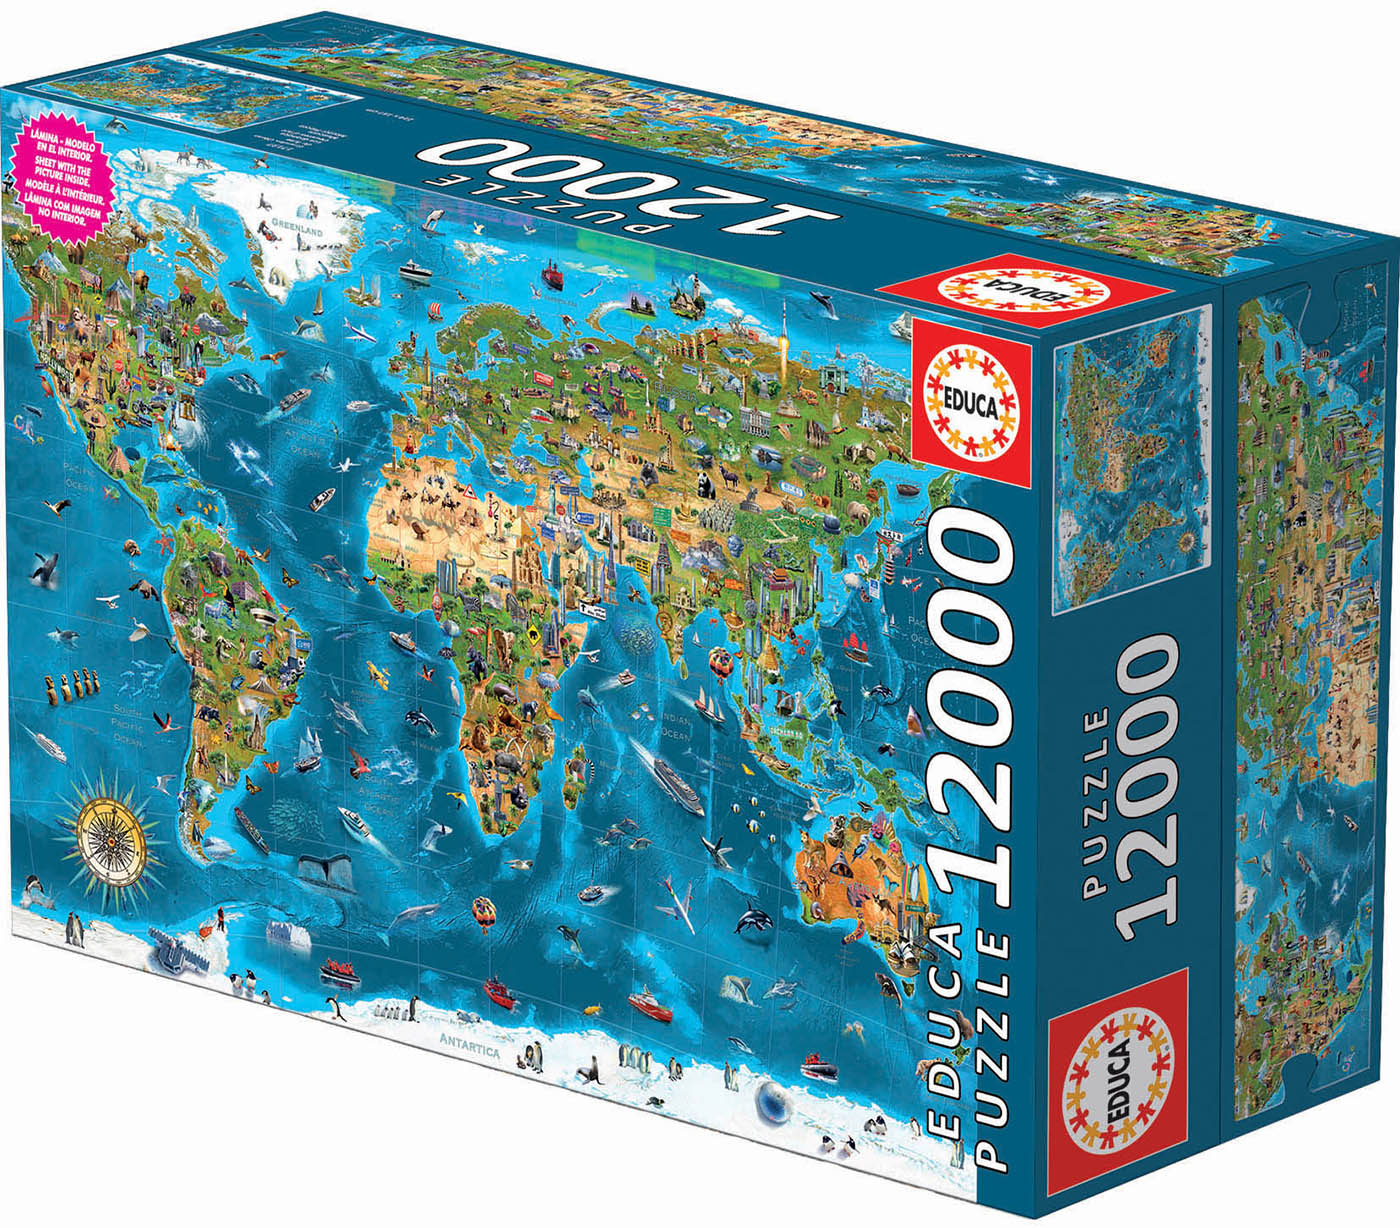 12,000 Piece Jigsaw Puzzle